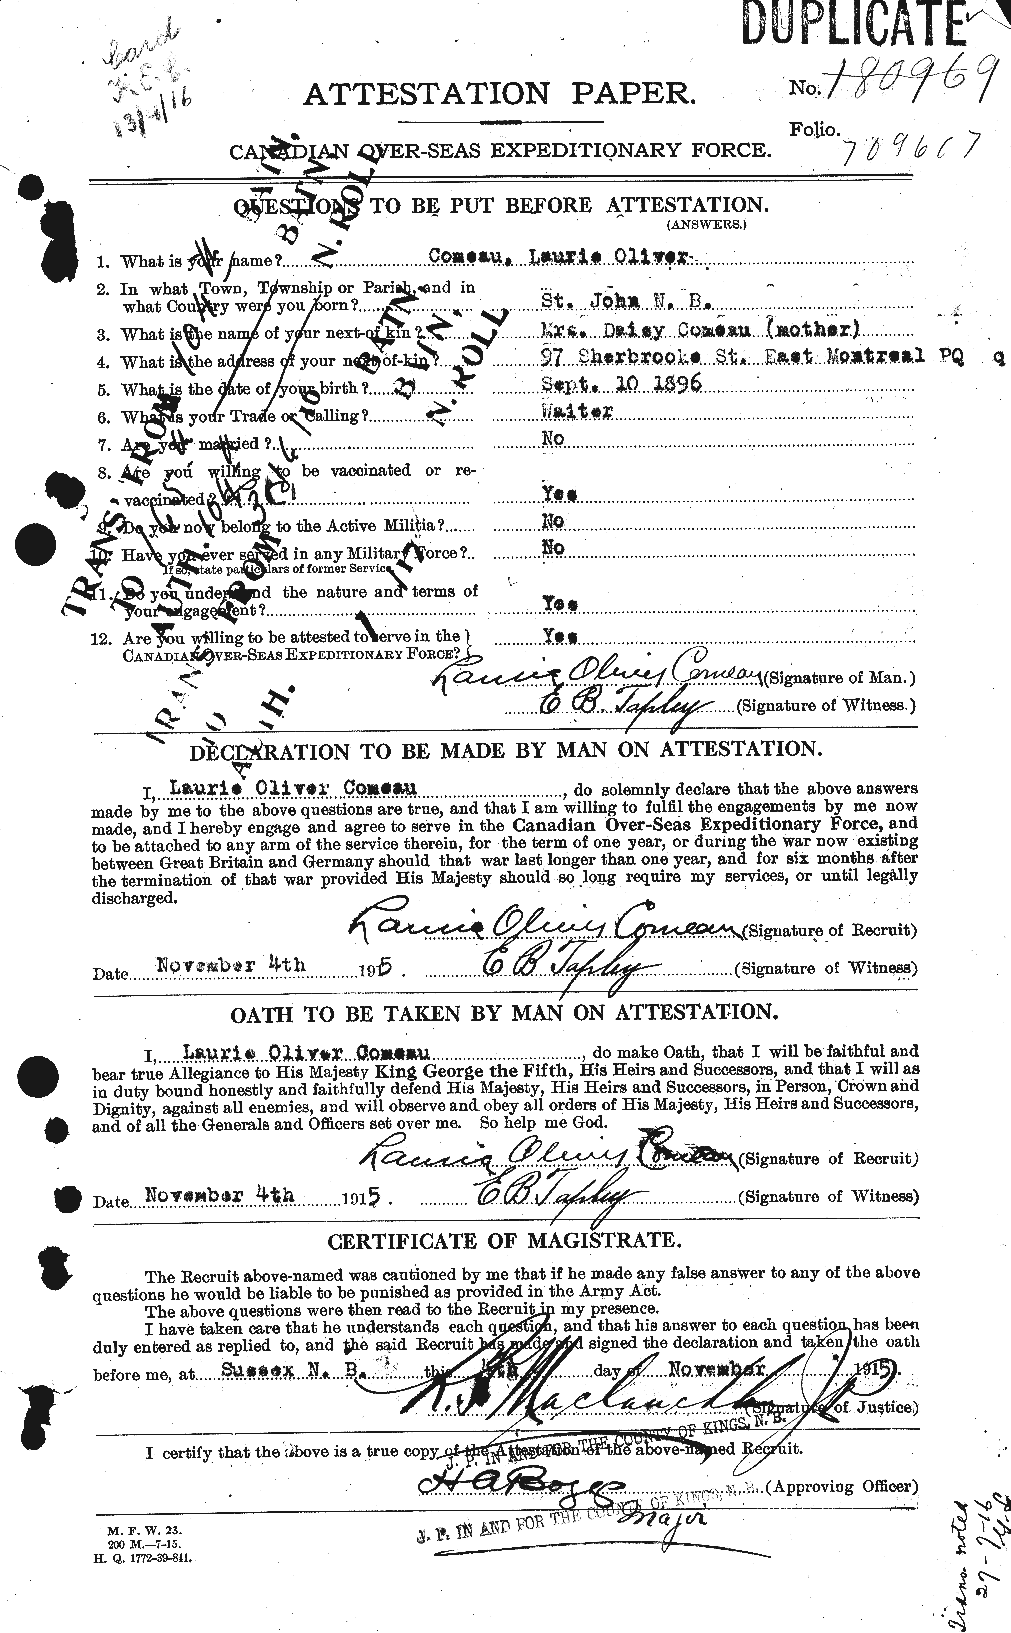 Dossiers du Personnel de la Première Guerre mondiale - CEC 069587a